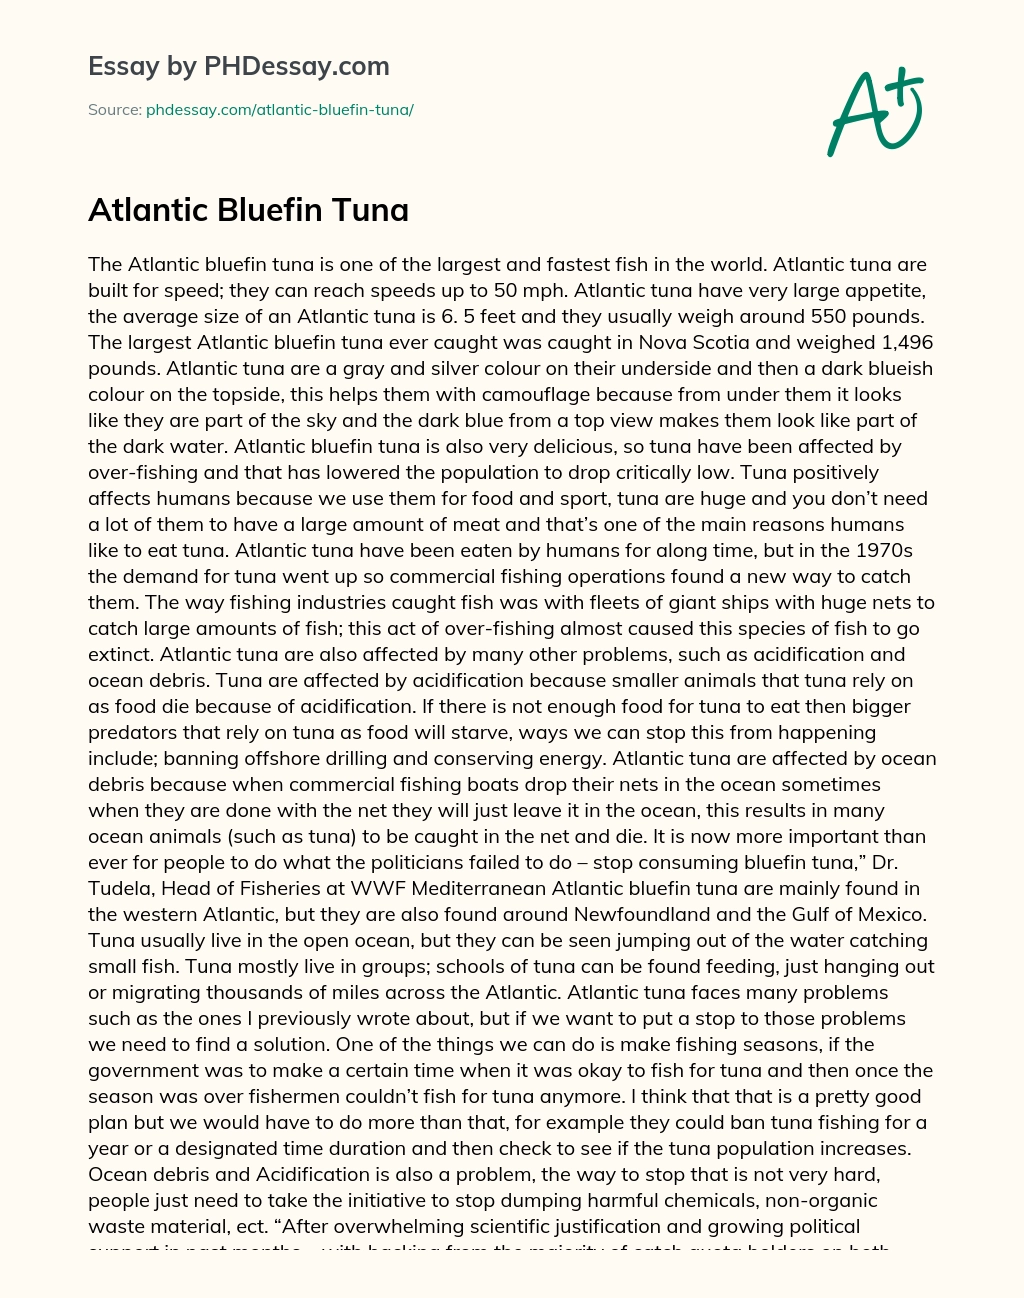 Atlantic Bluefin Tuna essay